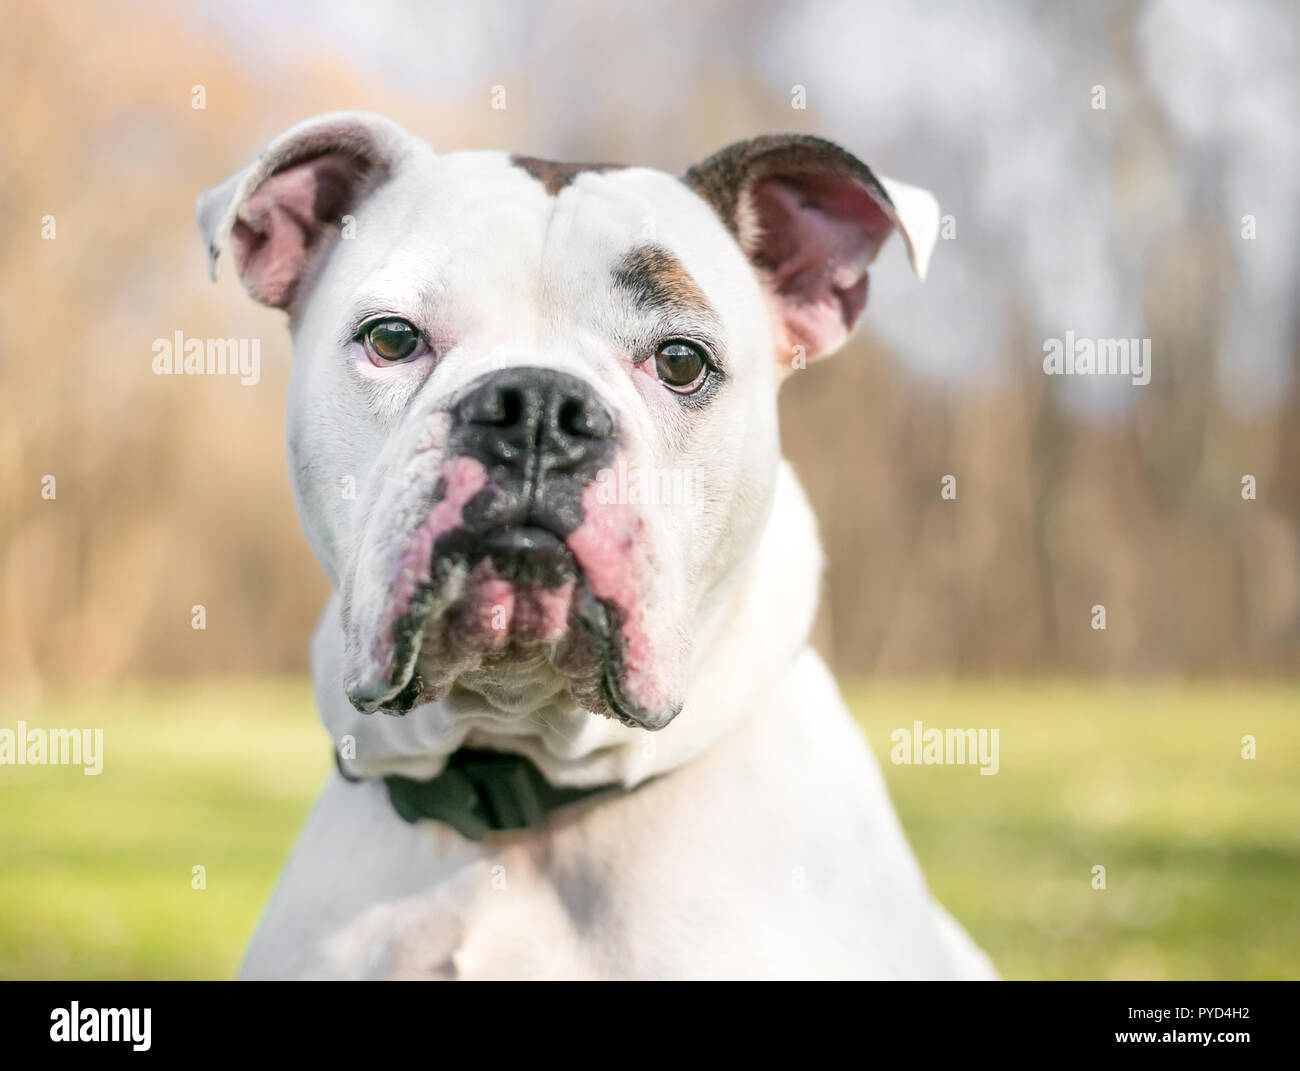 Un Bouledogue dog avec une expression d'ennui sur son visage Banque D'Images